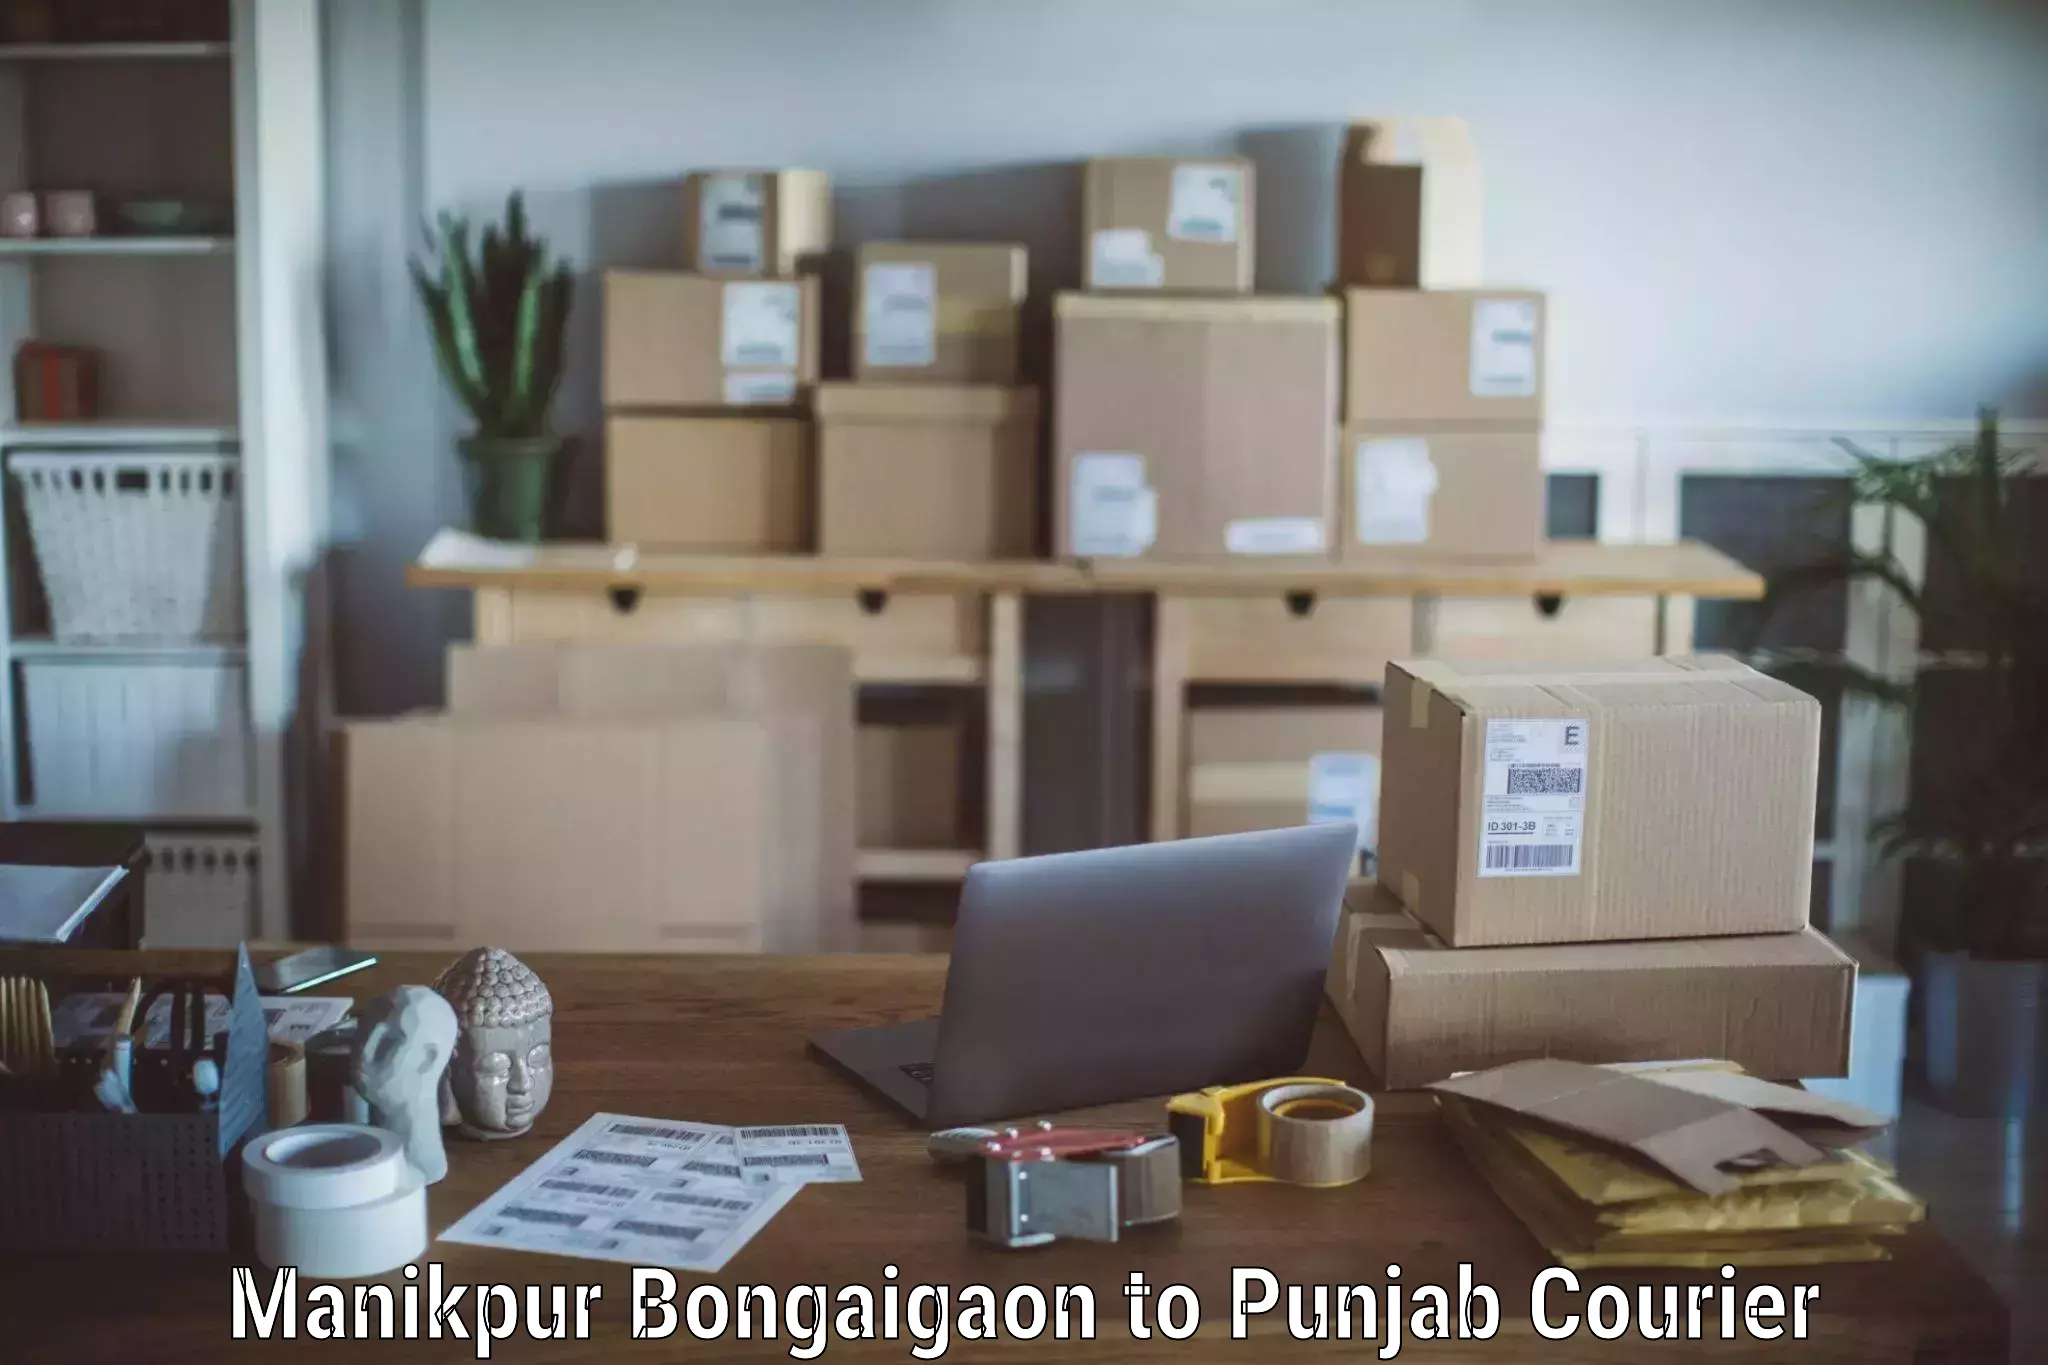 Expert moving and storage in Manikpur Bongaigaon to Punjab